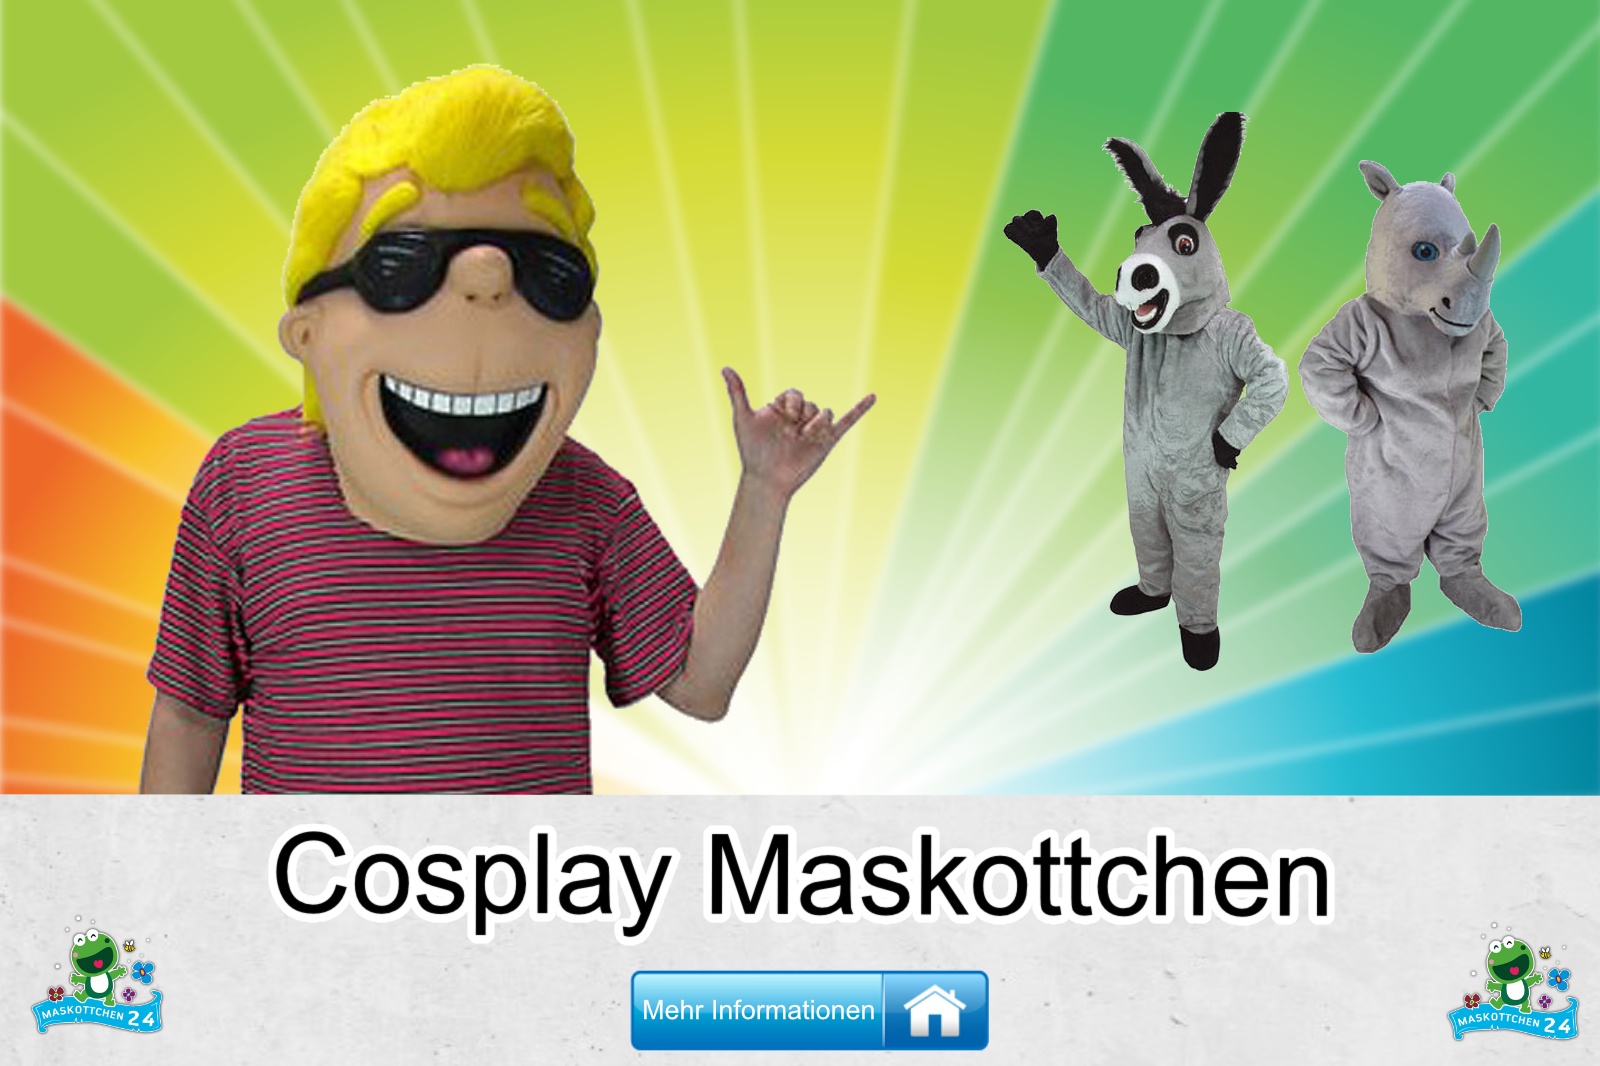 Cosplay Maskottchen Kostüm kaufen, günstige Produktion / Herstellung.